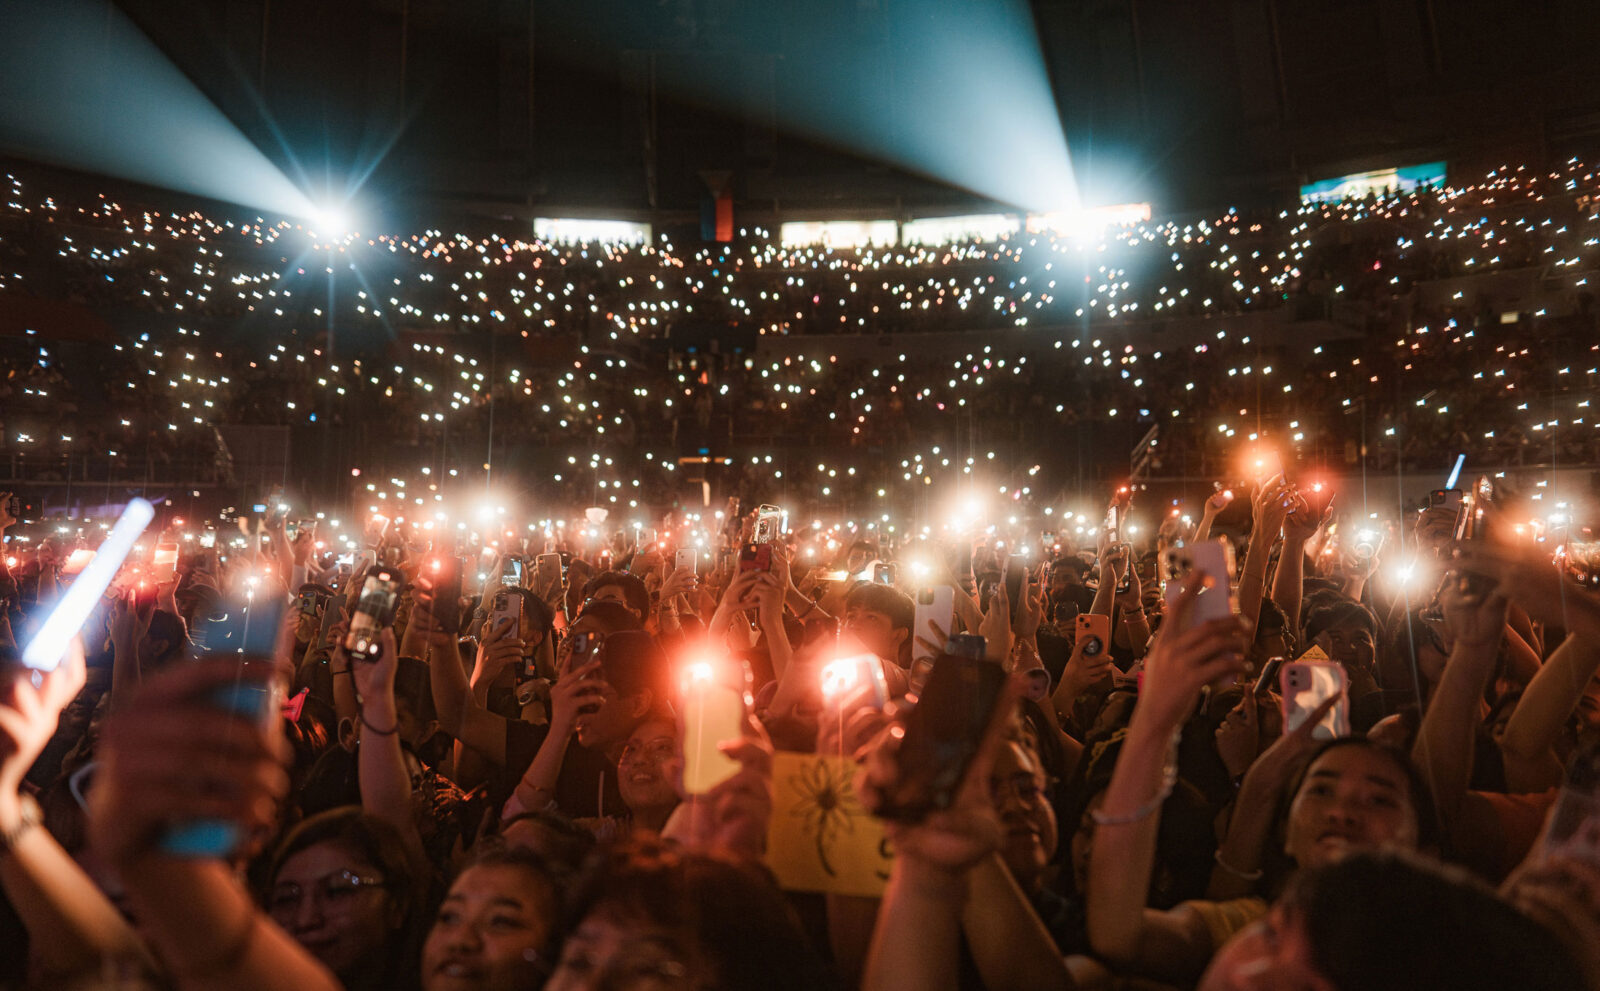 Concert crowd raising their their phone flashlights